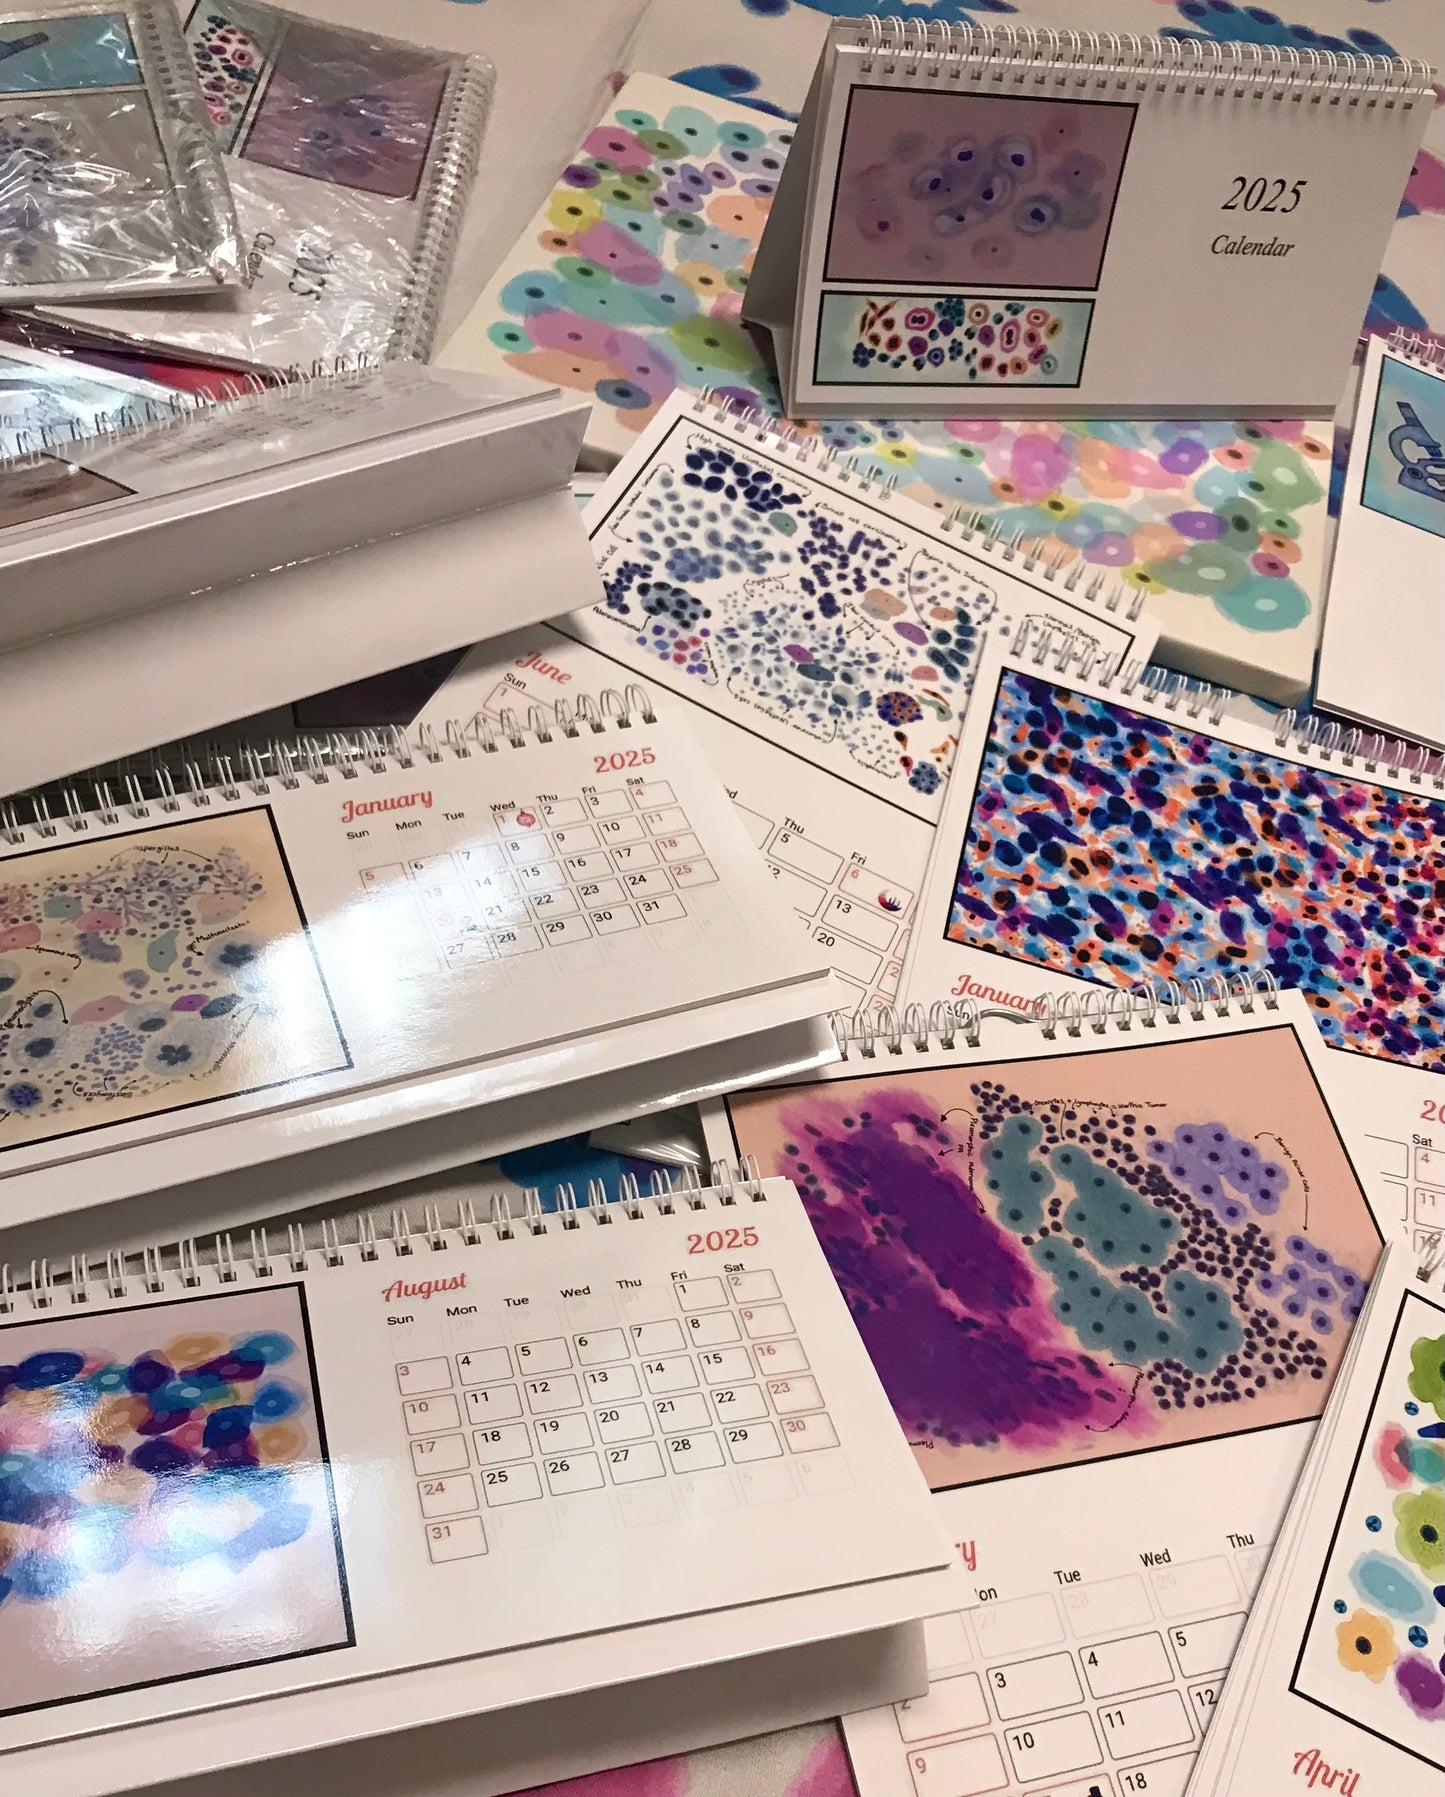 2025 desk Calendar - Cytology art prints